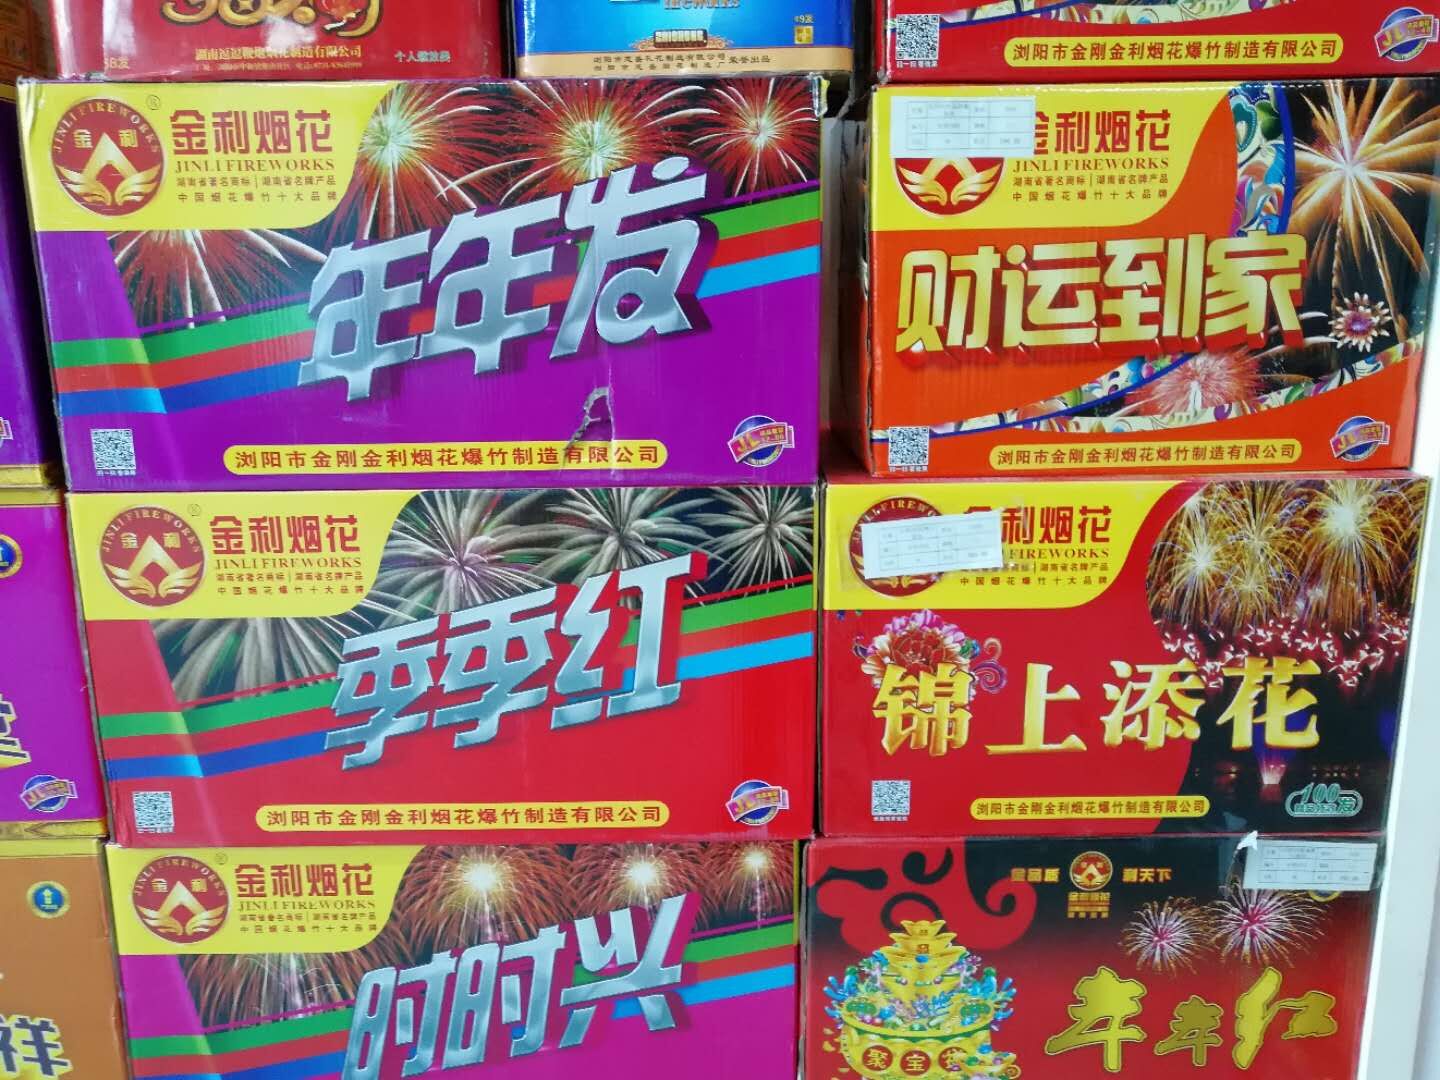 中洲烟花系列_产品中心_浏阳市中洲烟花集团有限公司